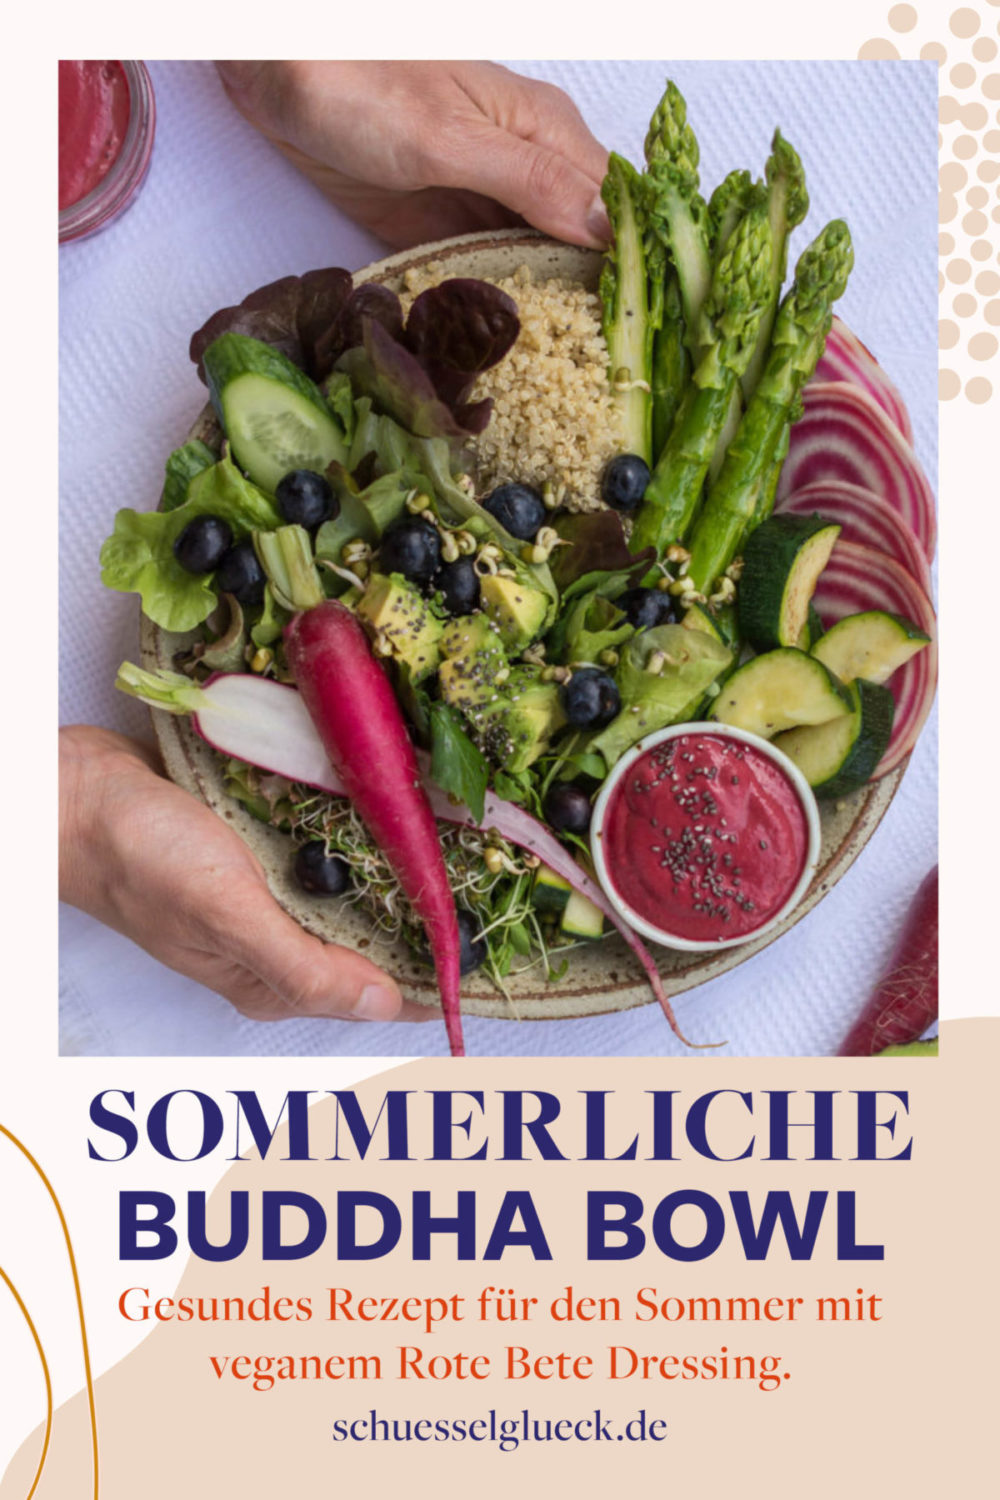 Mein perfektes Sommeressen: Buddha Bowls! Mit veganem Oberknaller Salatdressing #PrettyInPink